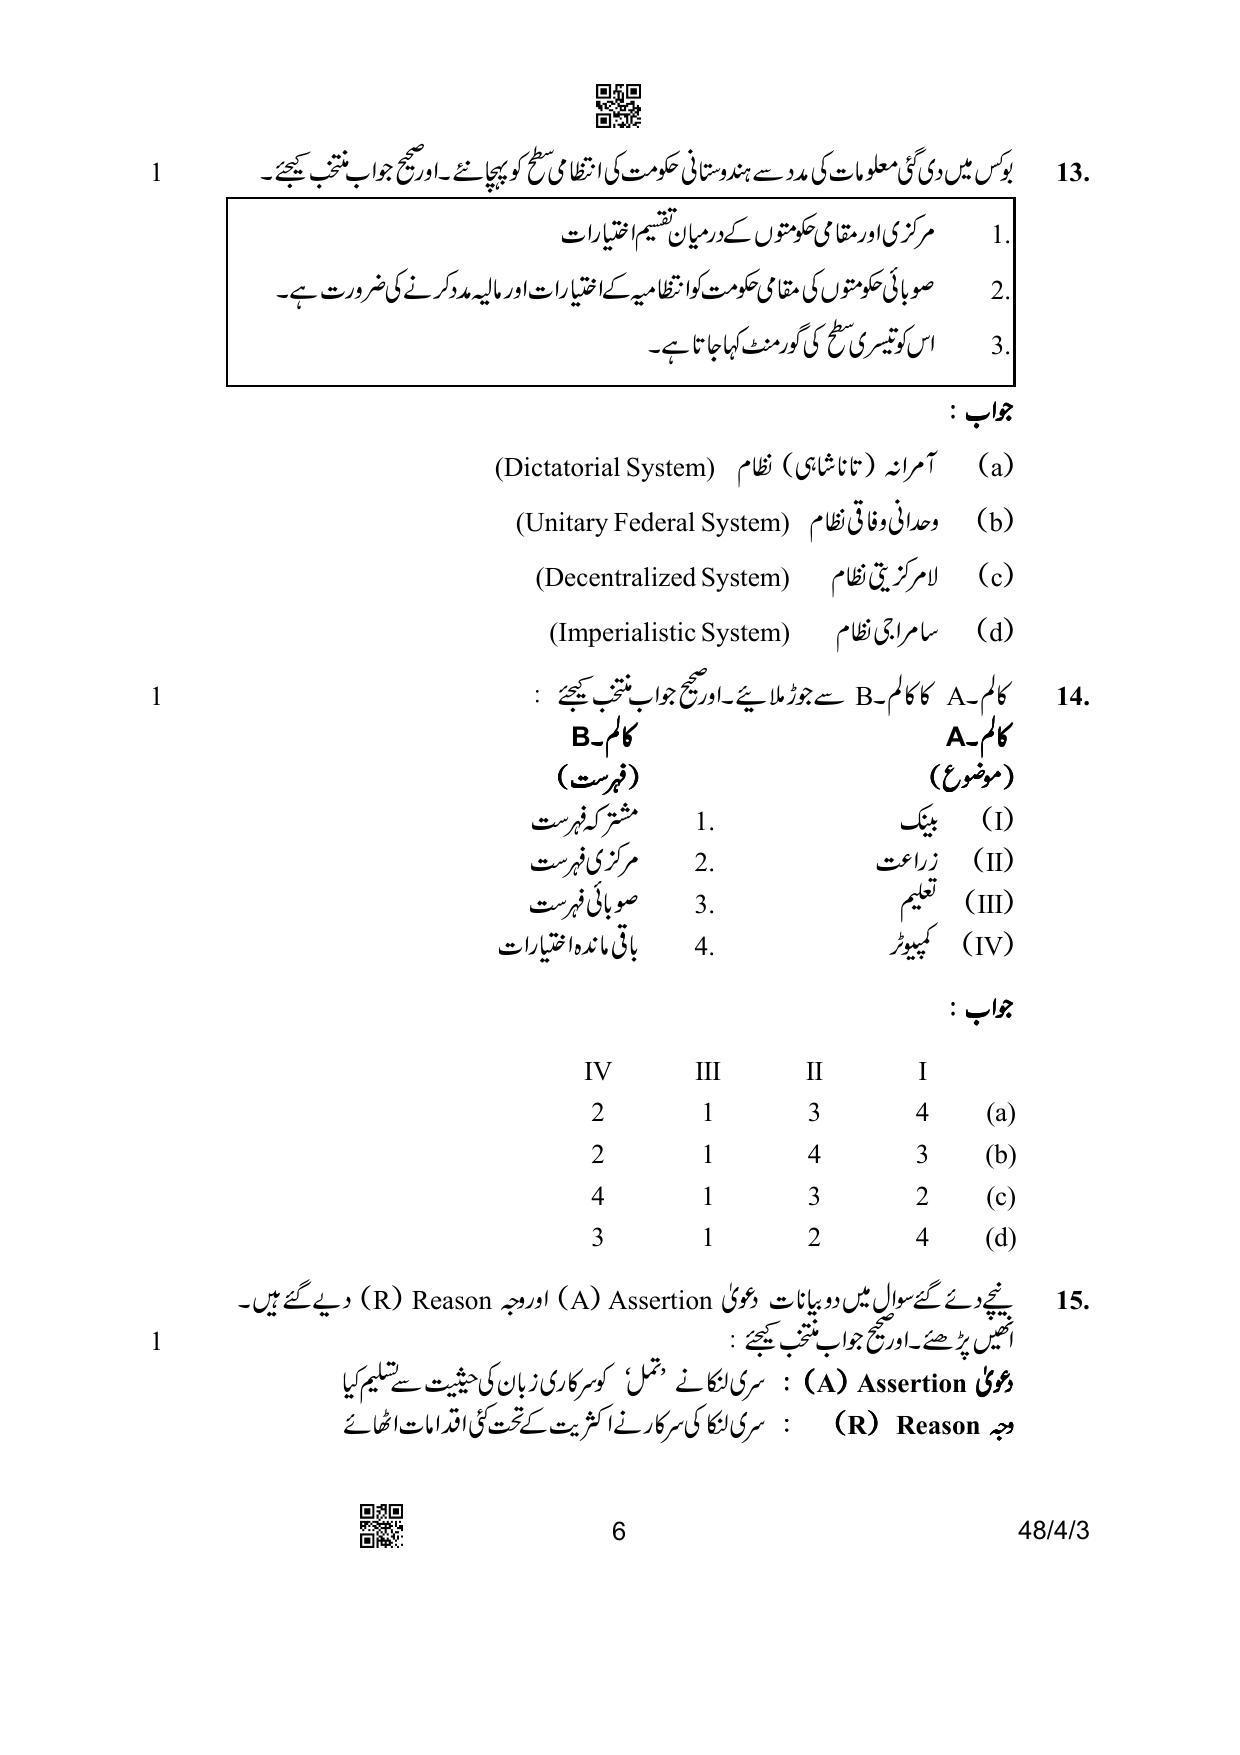 CBSE Class 10 48-4-3 Social Science Urdu Version 2023 Question Paper - Page 6